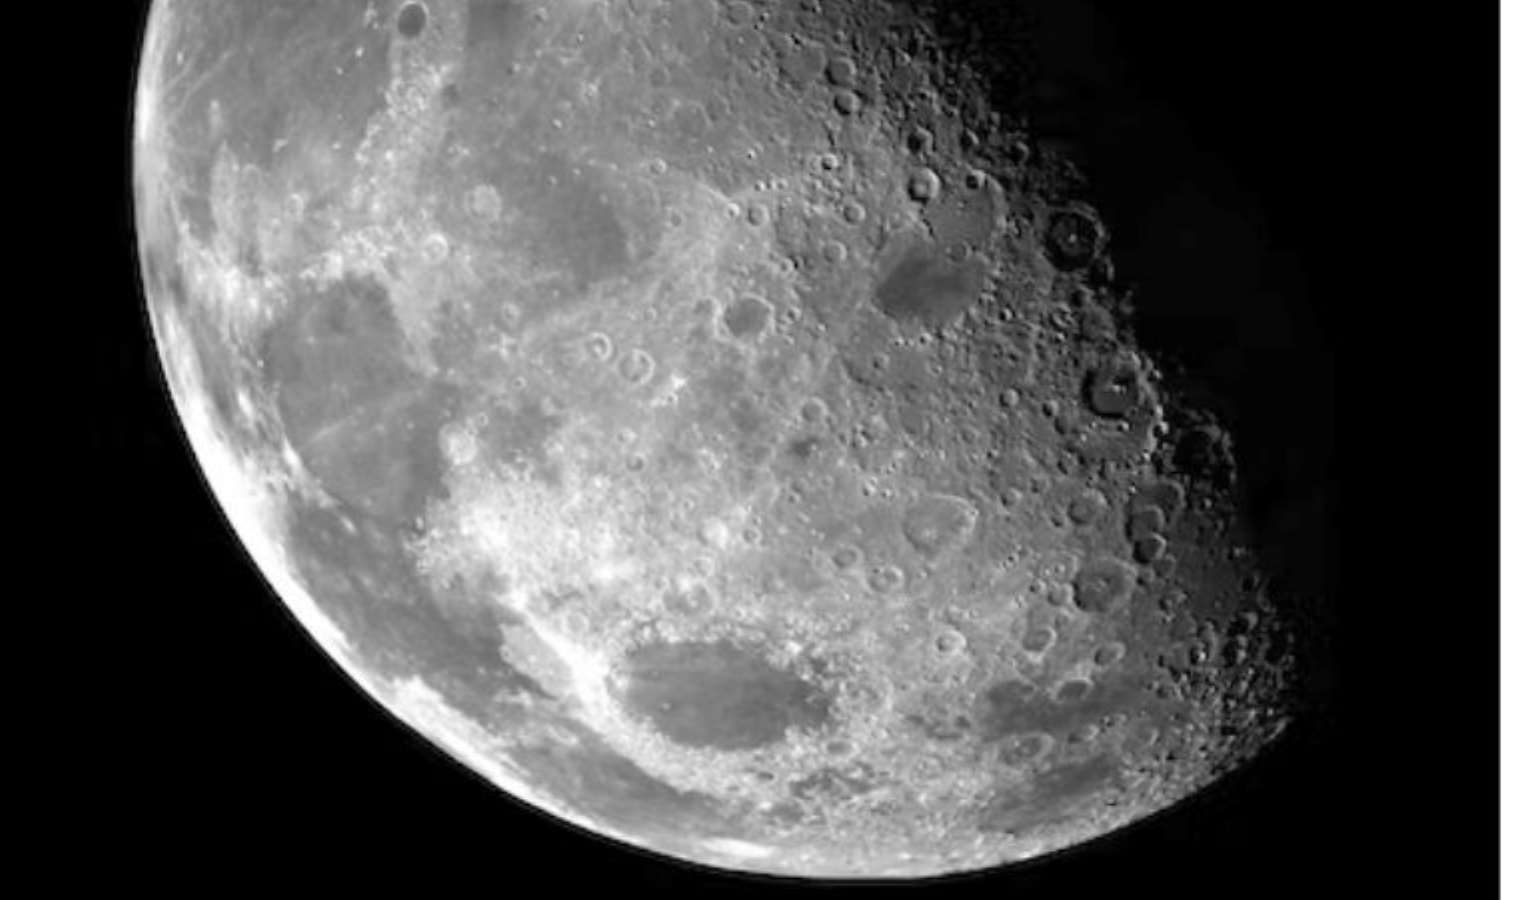 NASA'dan Ay için yeni bir saat geliştirme hamlesi - Son Dakika Bilim Teknoloji Haberleri | Cumhuriyet